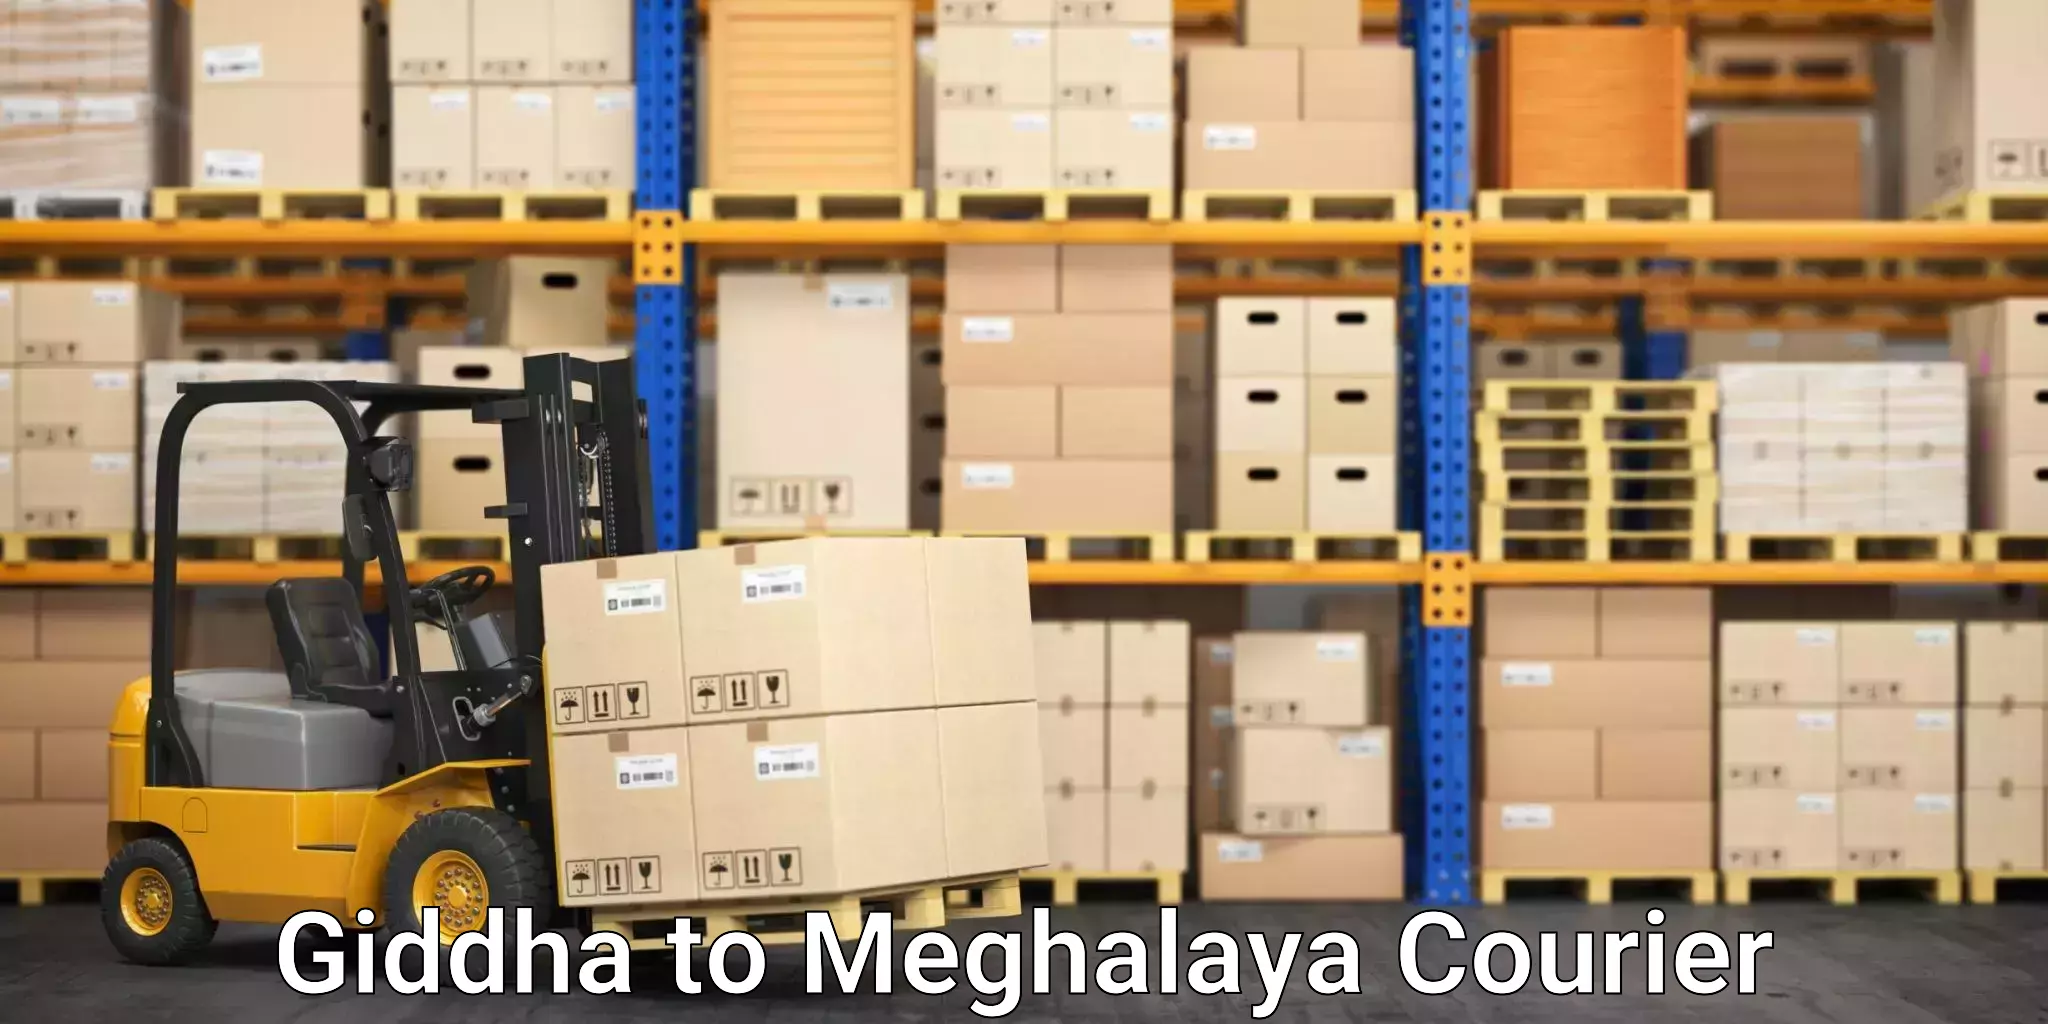 Skilled furniture transport Giddha to Meghalaya